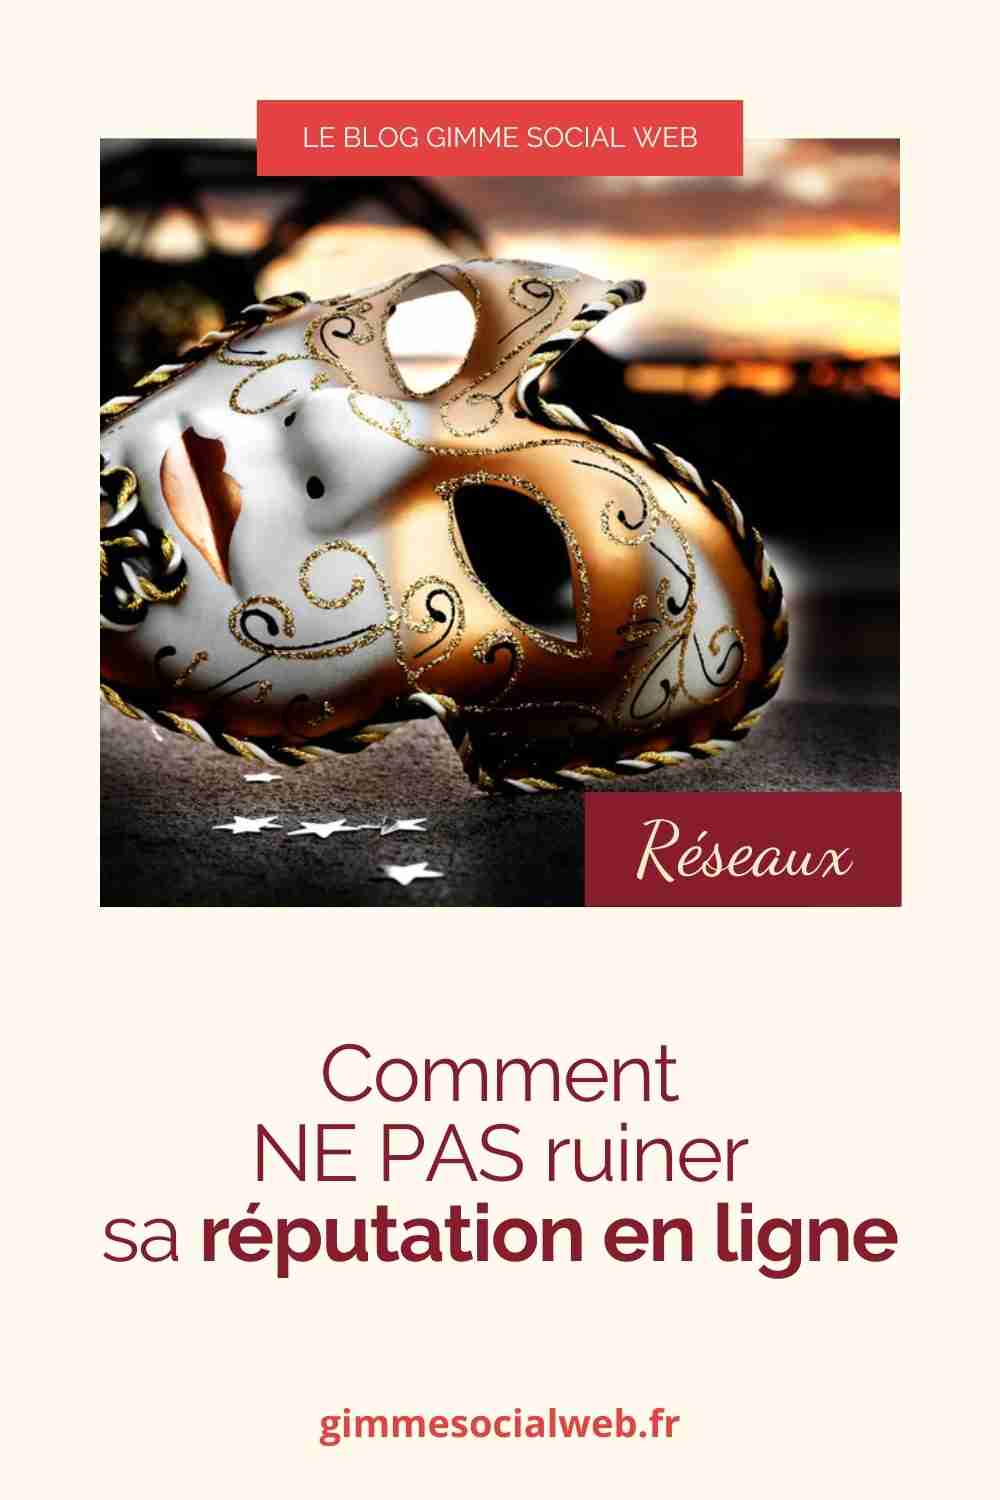 Masque vénitien + cover Epingle Pinterest - réputation en ligne